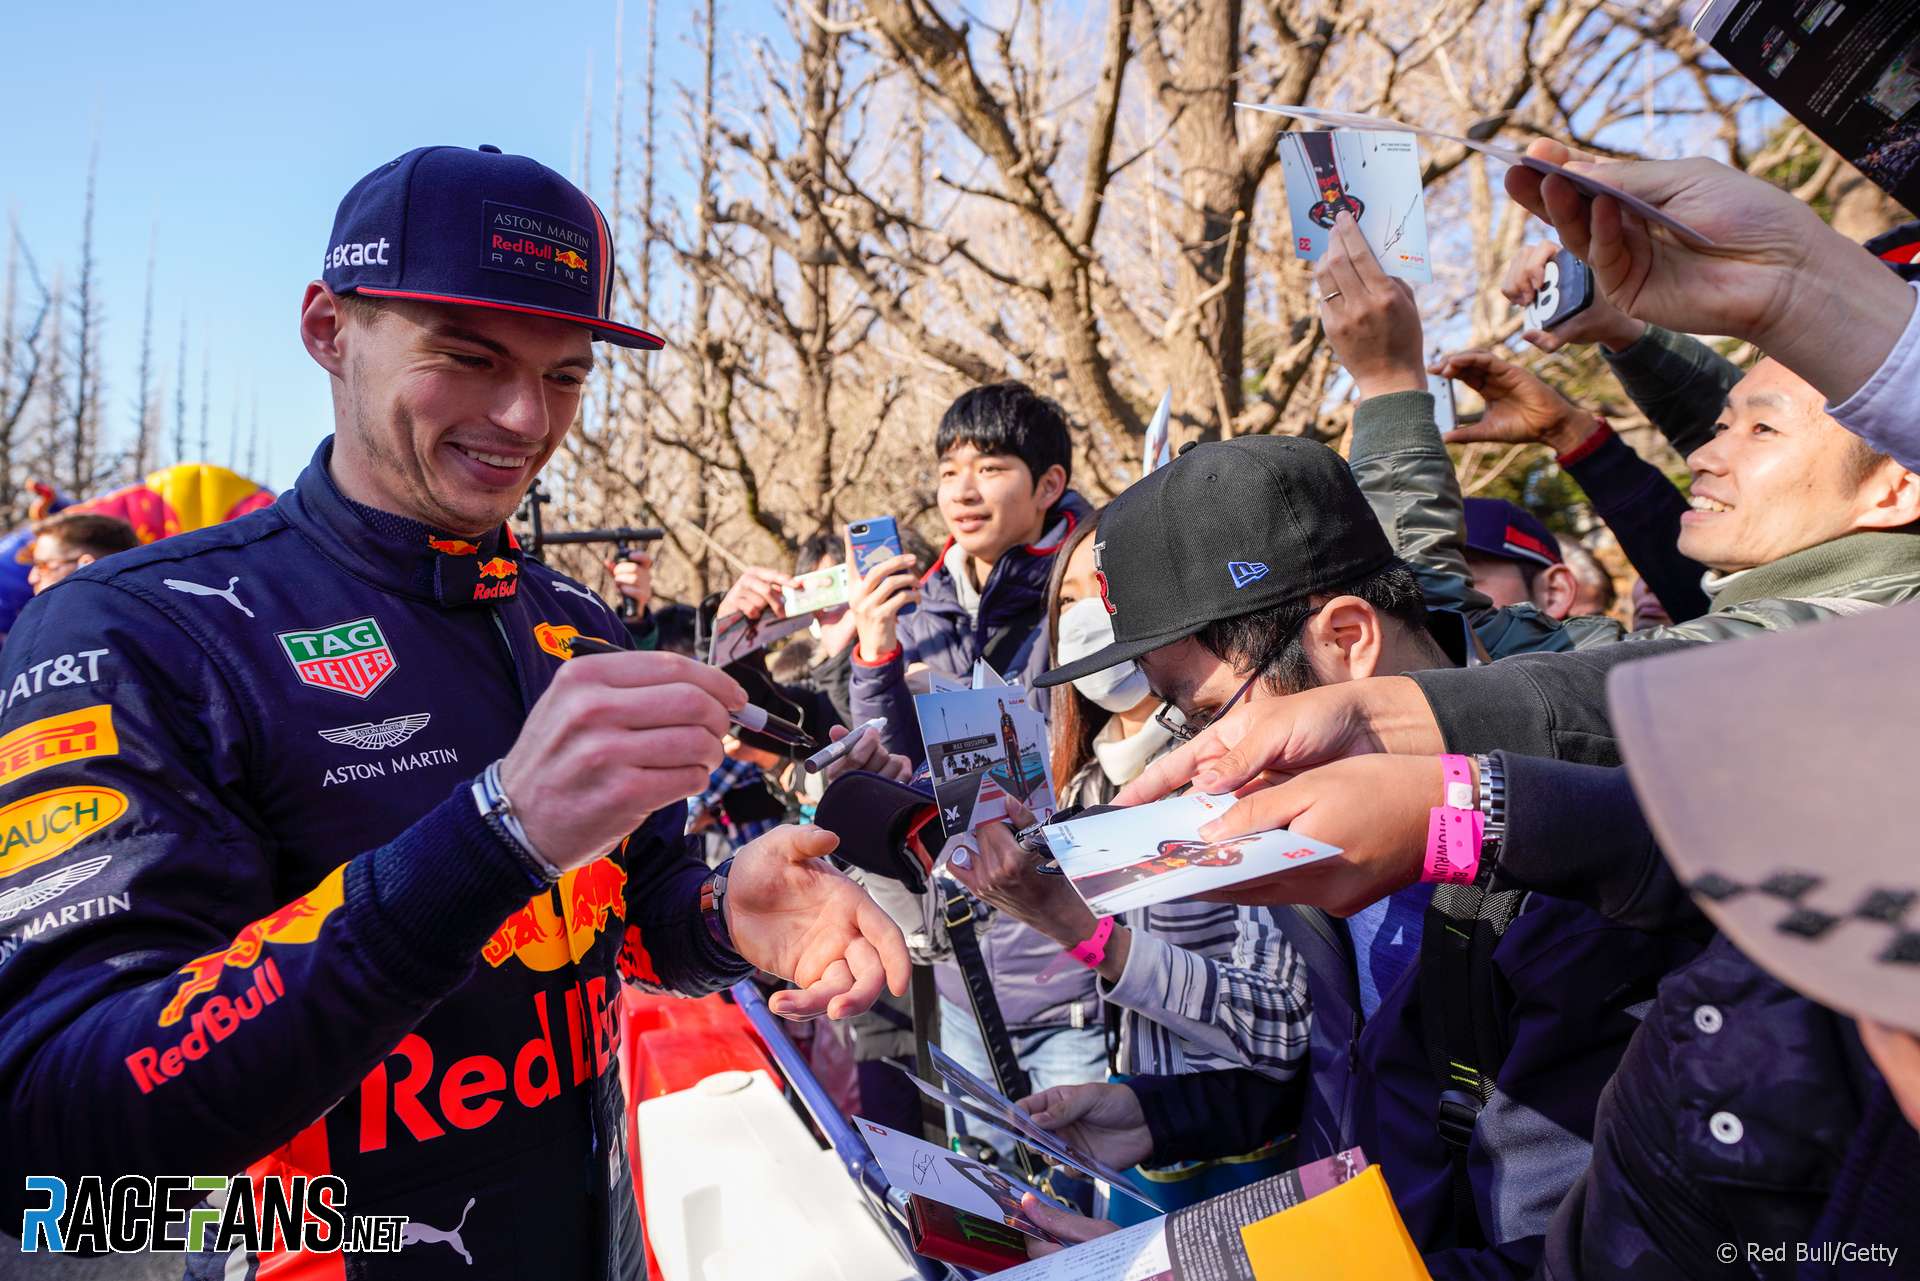 Max Verstappen, Red Bull, 2019